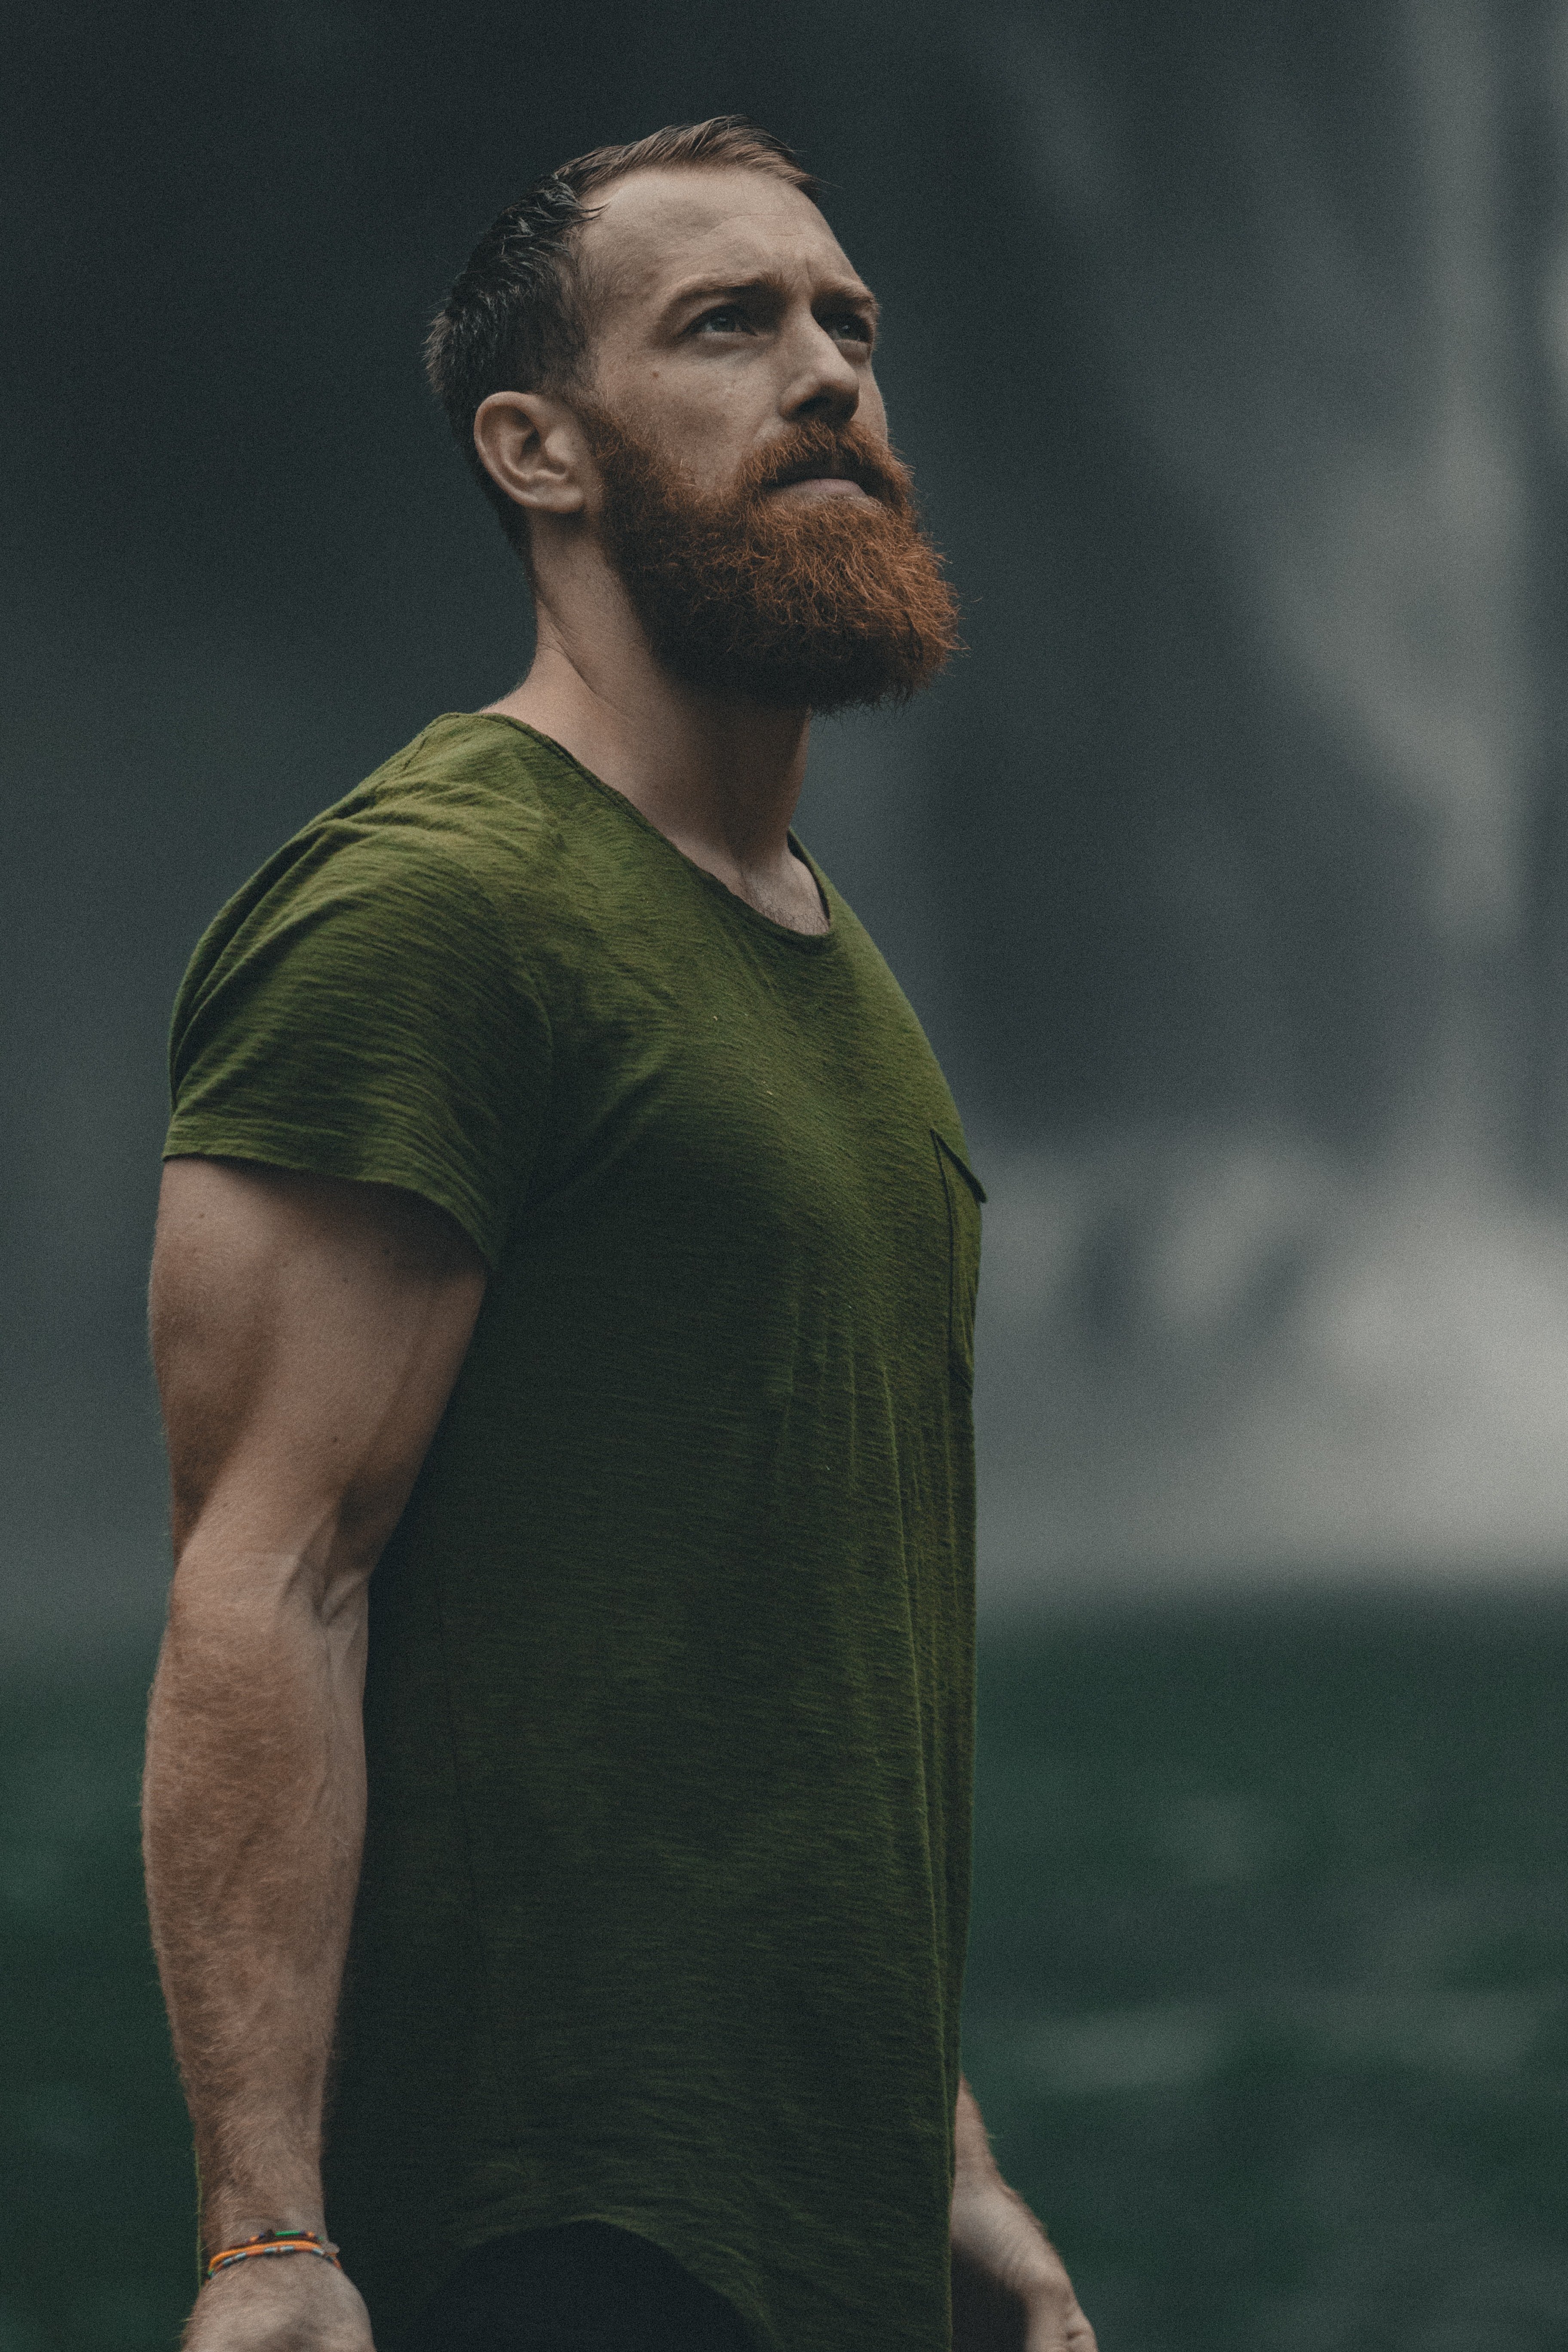 Bearded man wearing a green T-shirt | Source: Unsplash / Jakob Owens